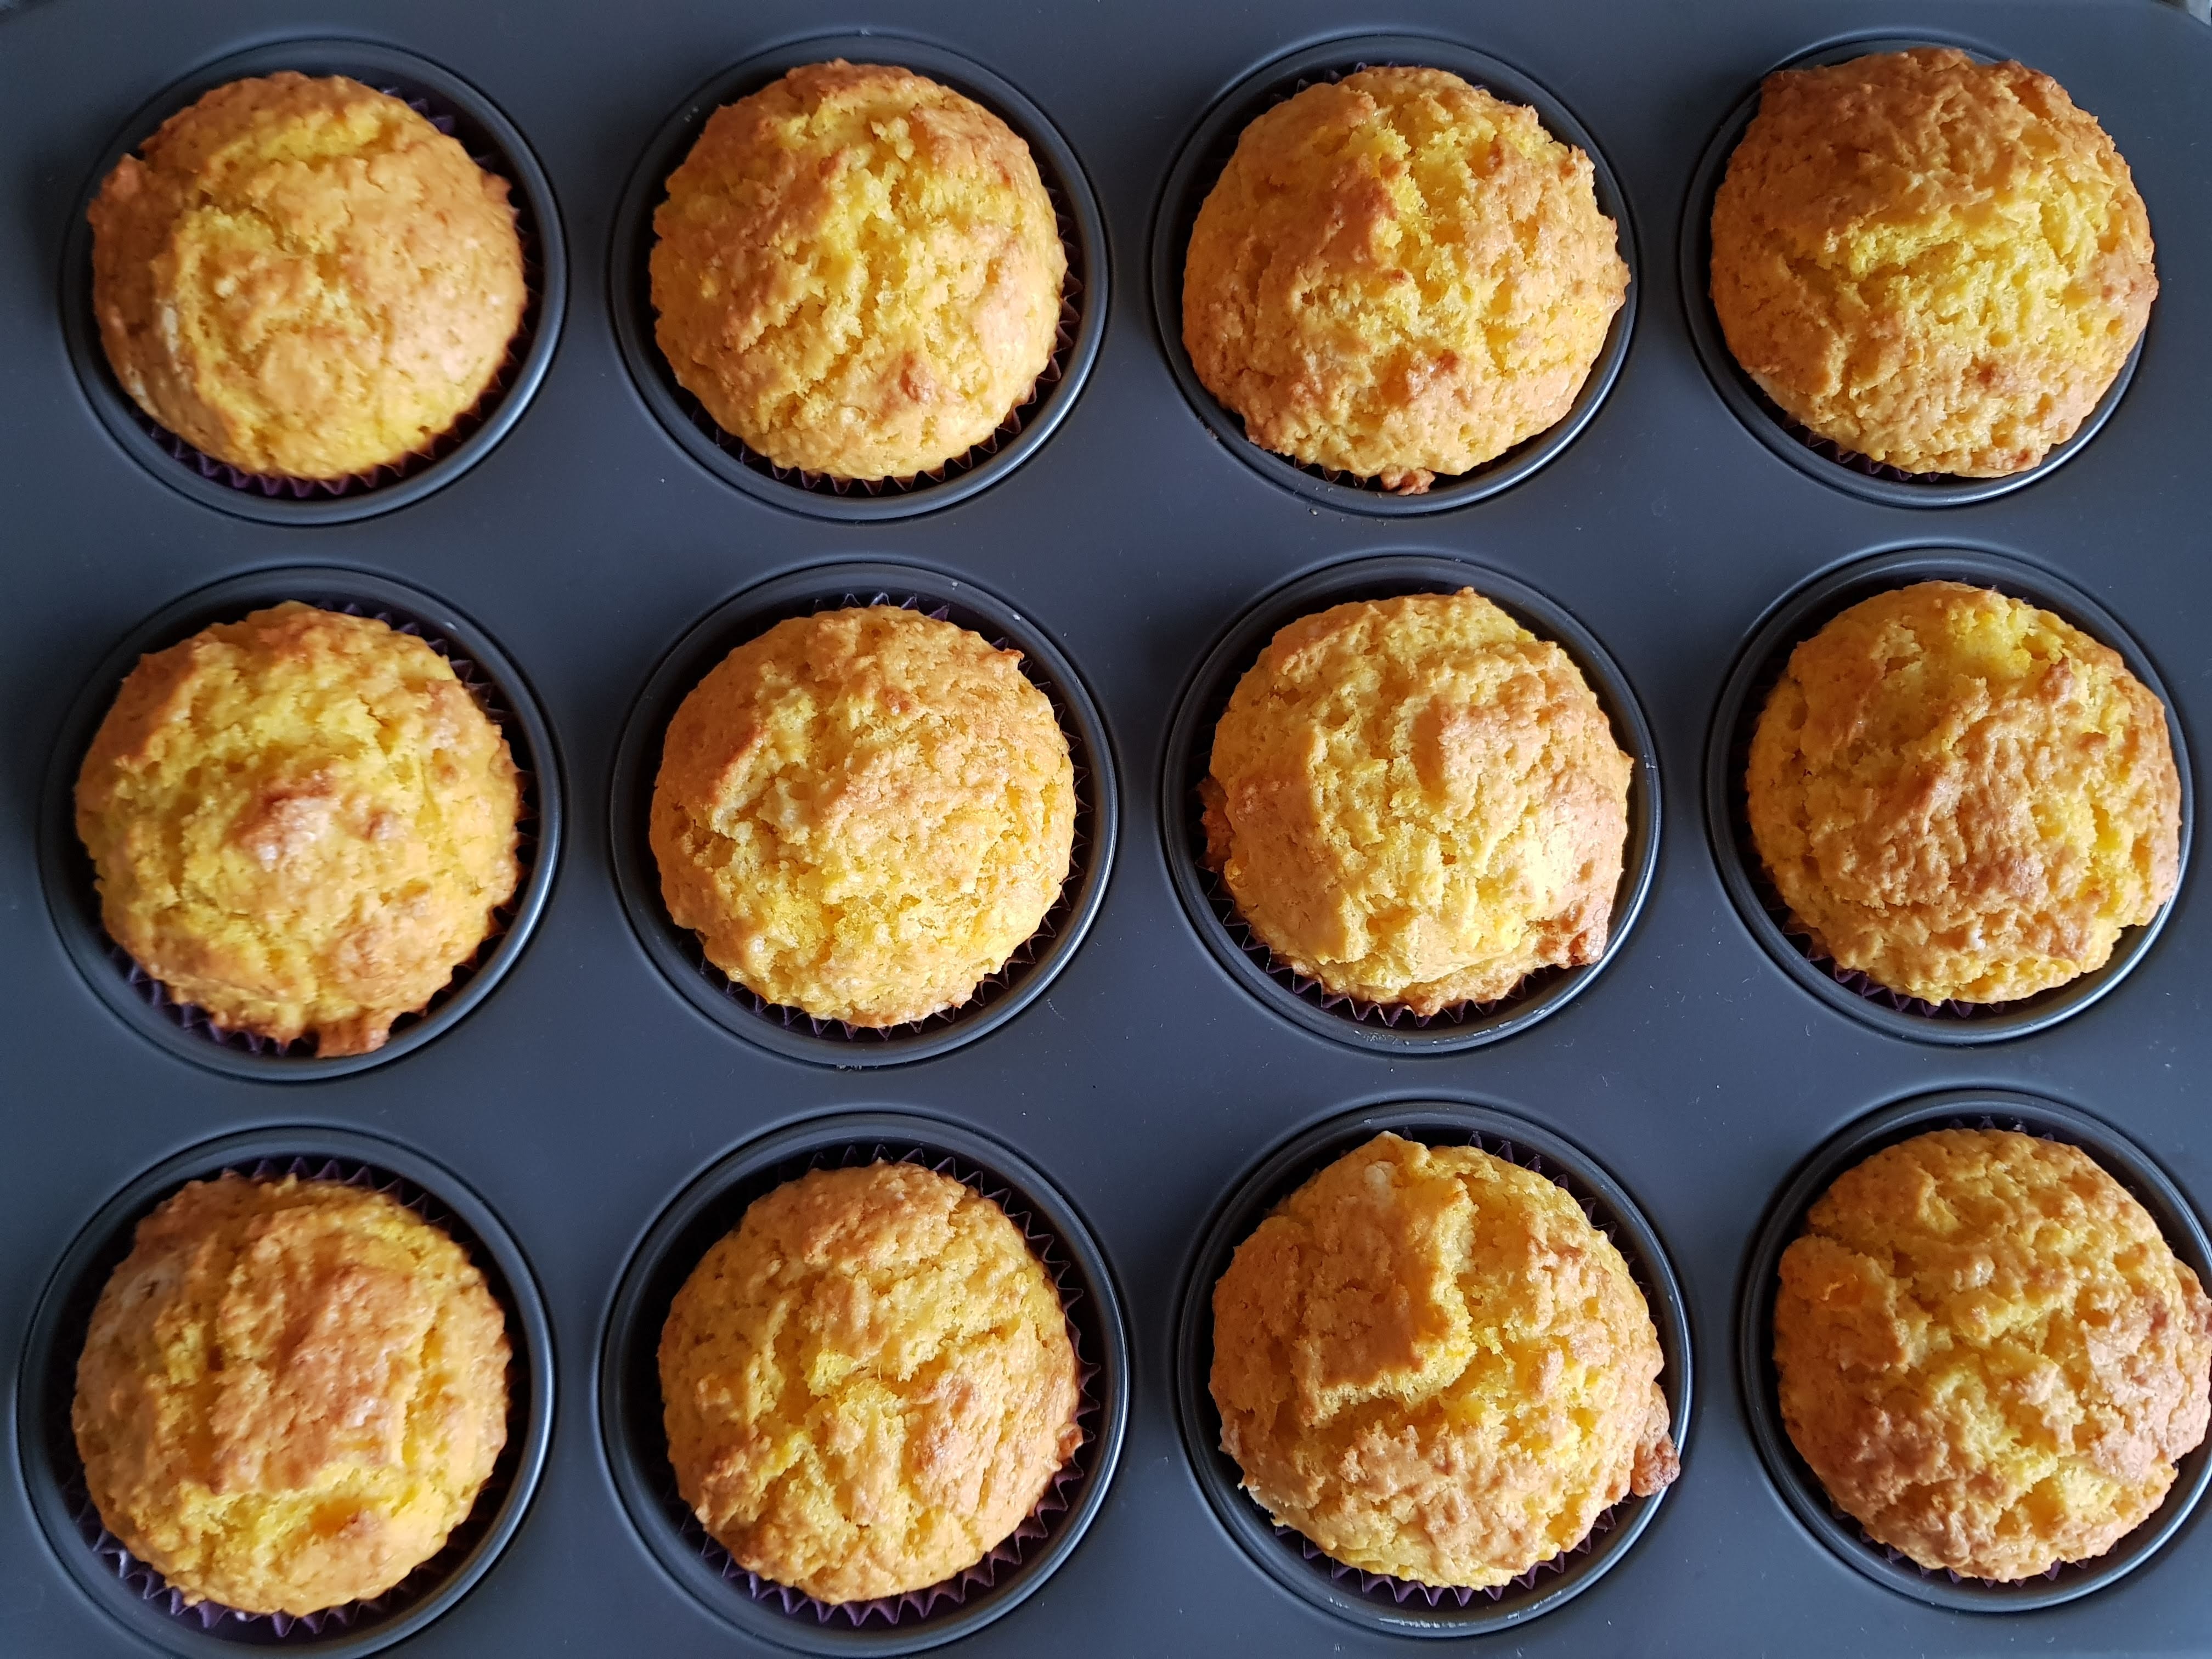 Cornbread muffins in their baking tin